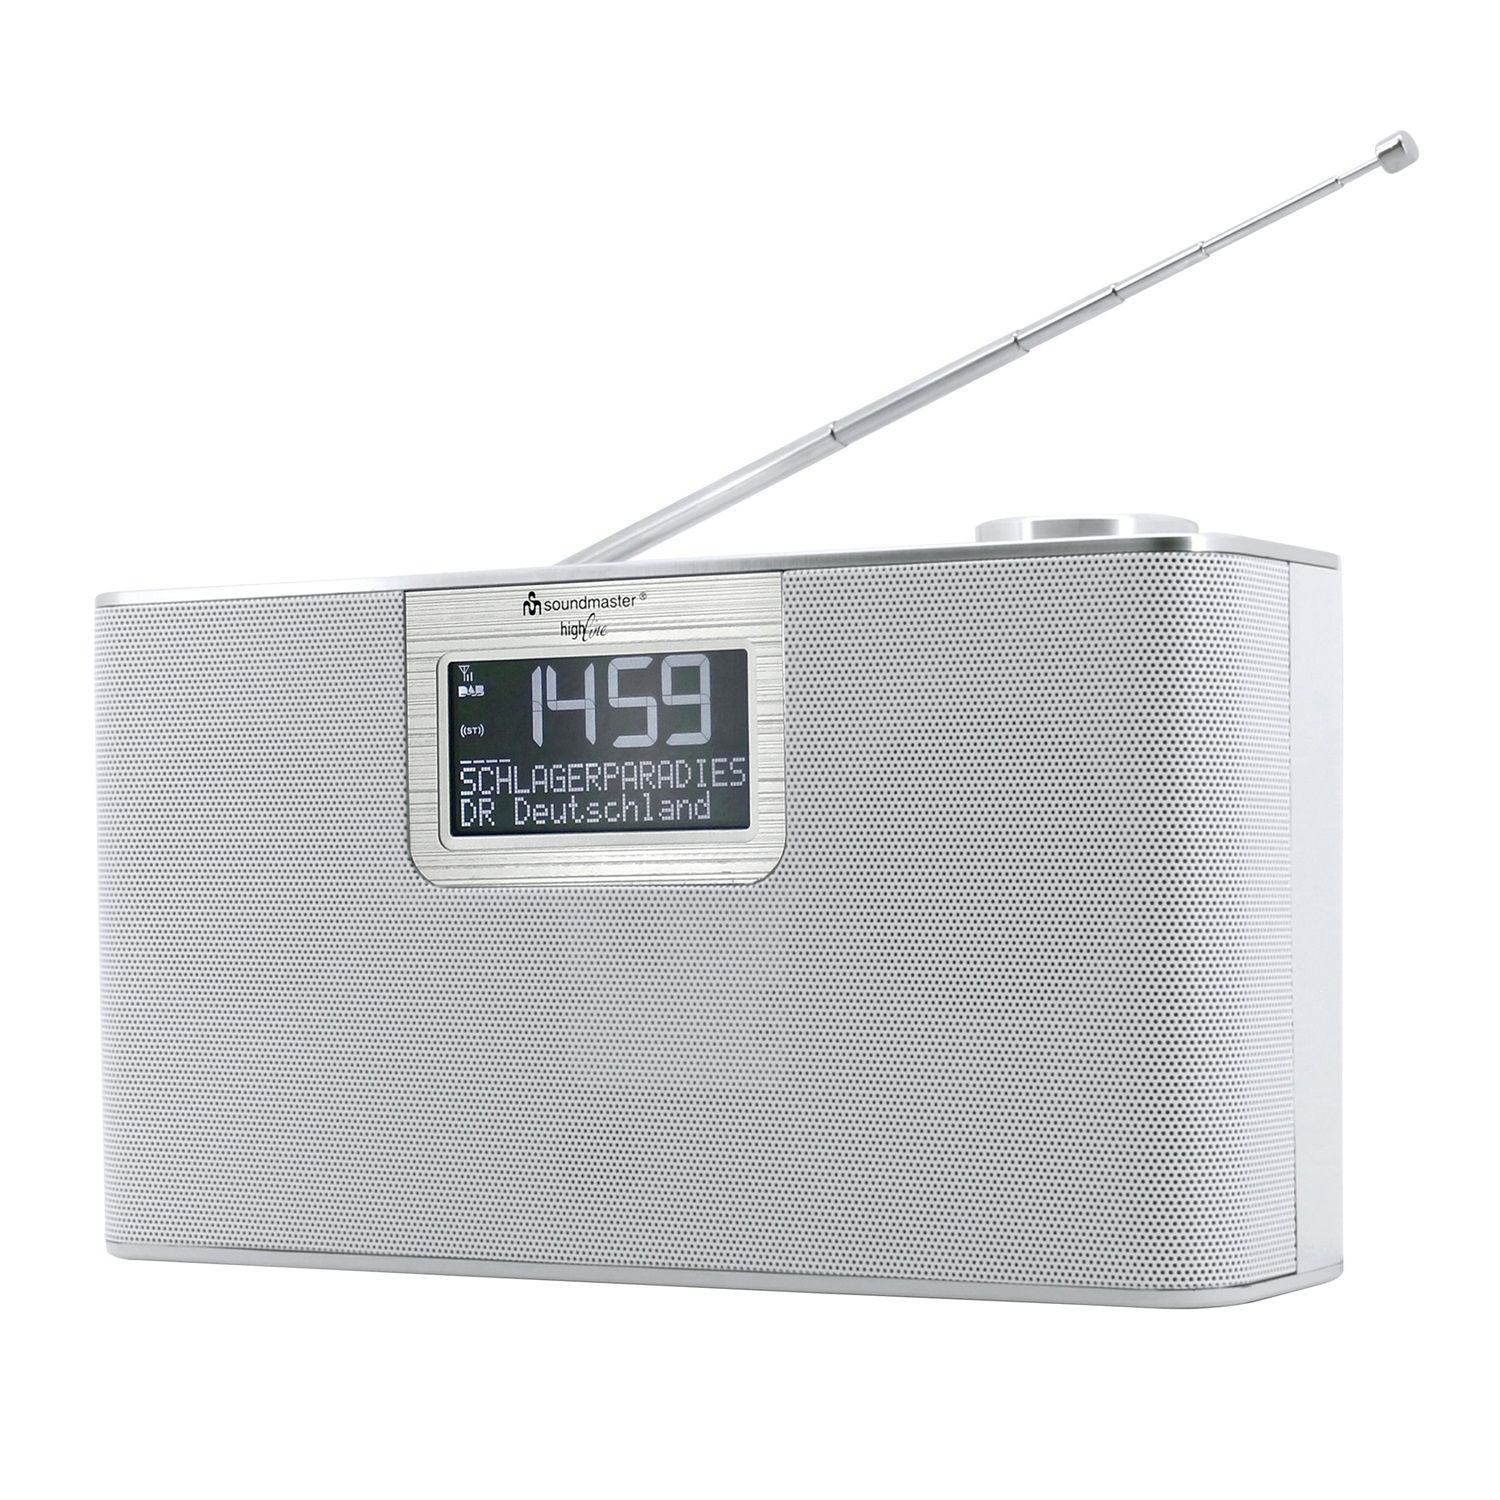 SOUNDMASTER DAB700WE Multifunktionsradio, FM, Bluetooth, DAB+, DAB, DAB+, weiß AM, FM